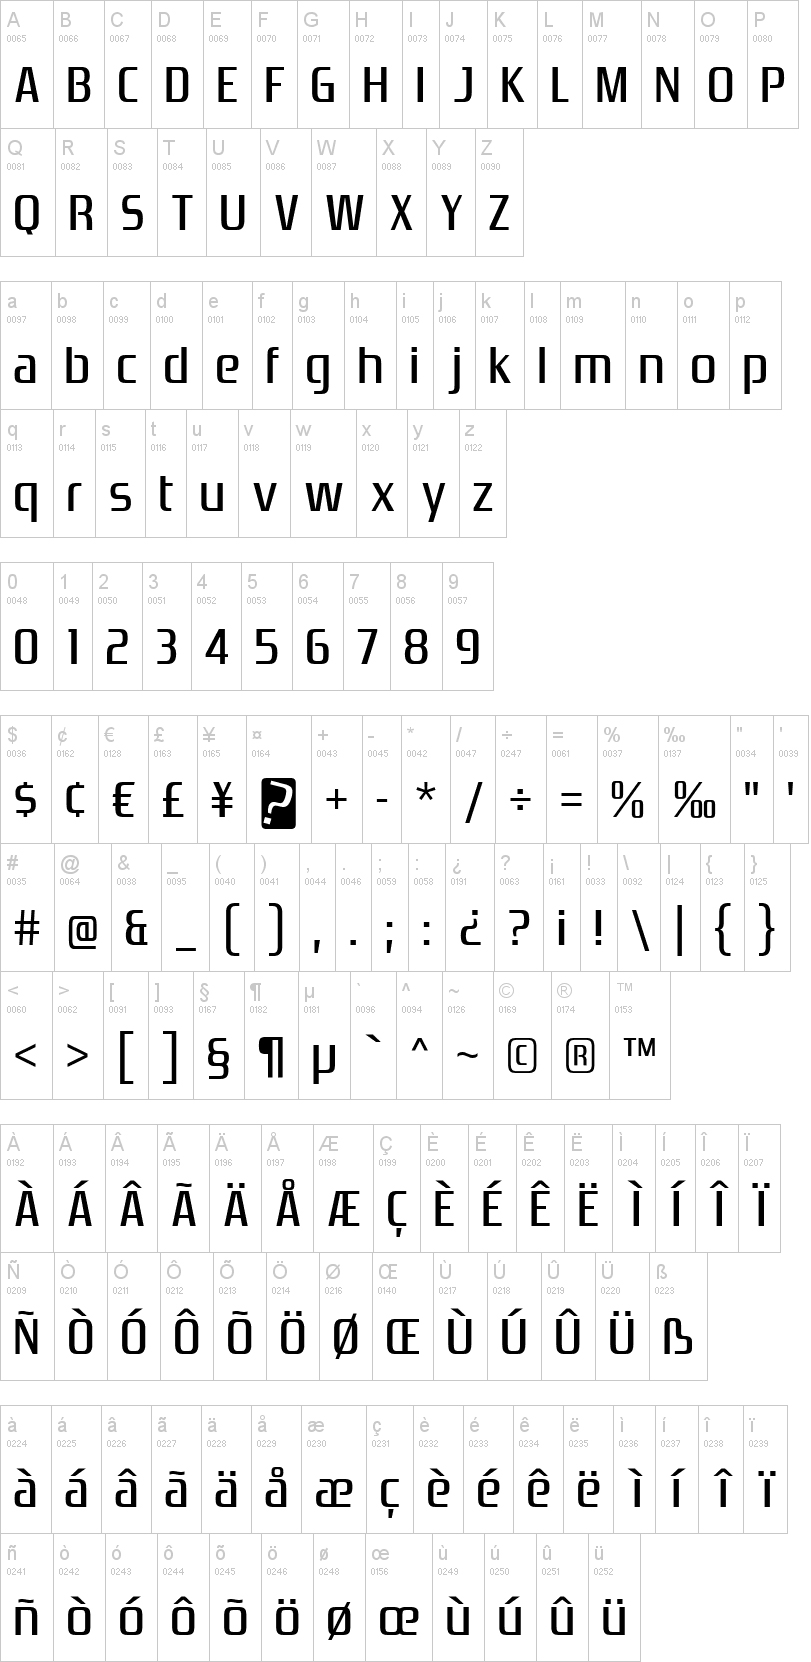 tipografia playstation abecedario alfabeto